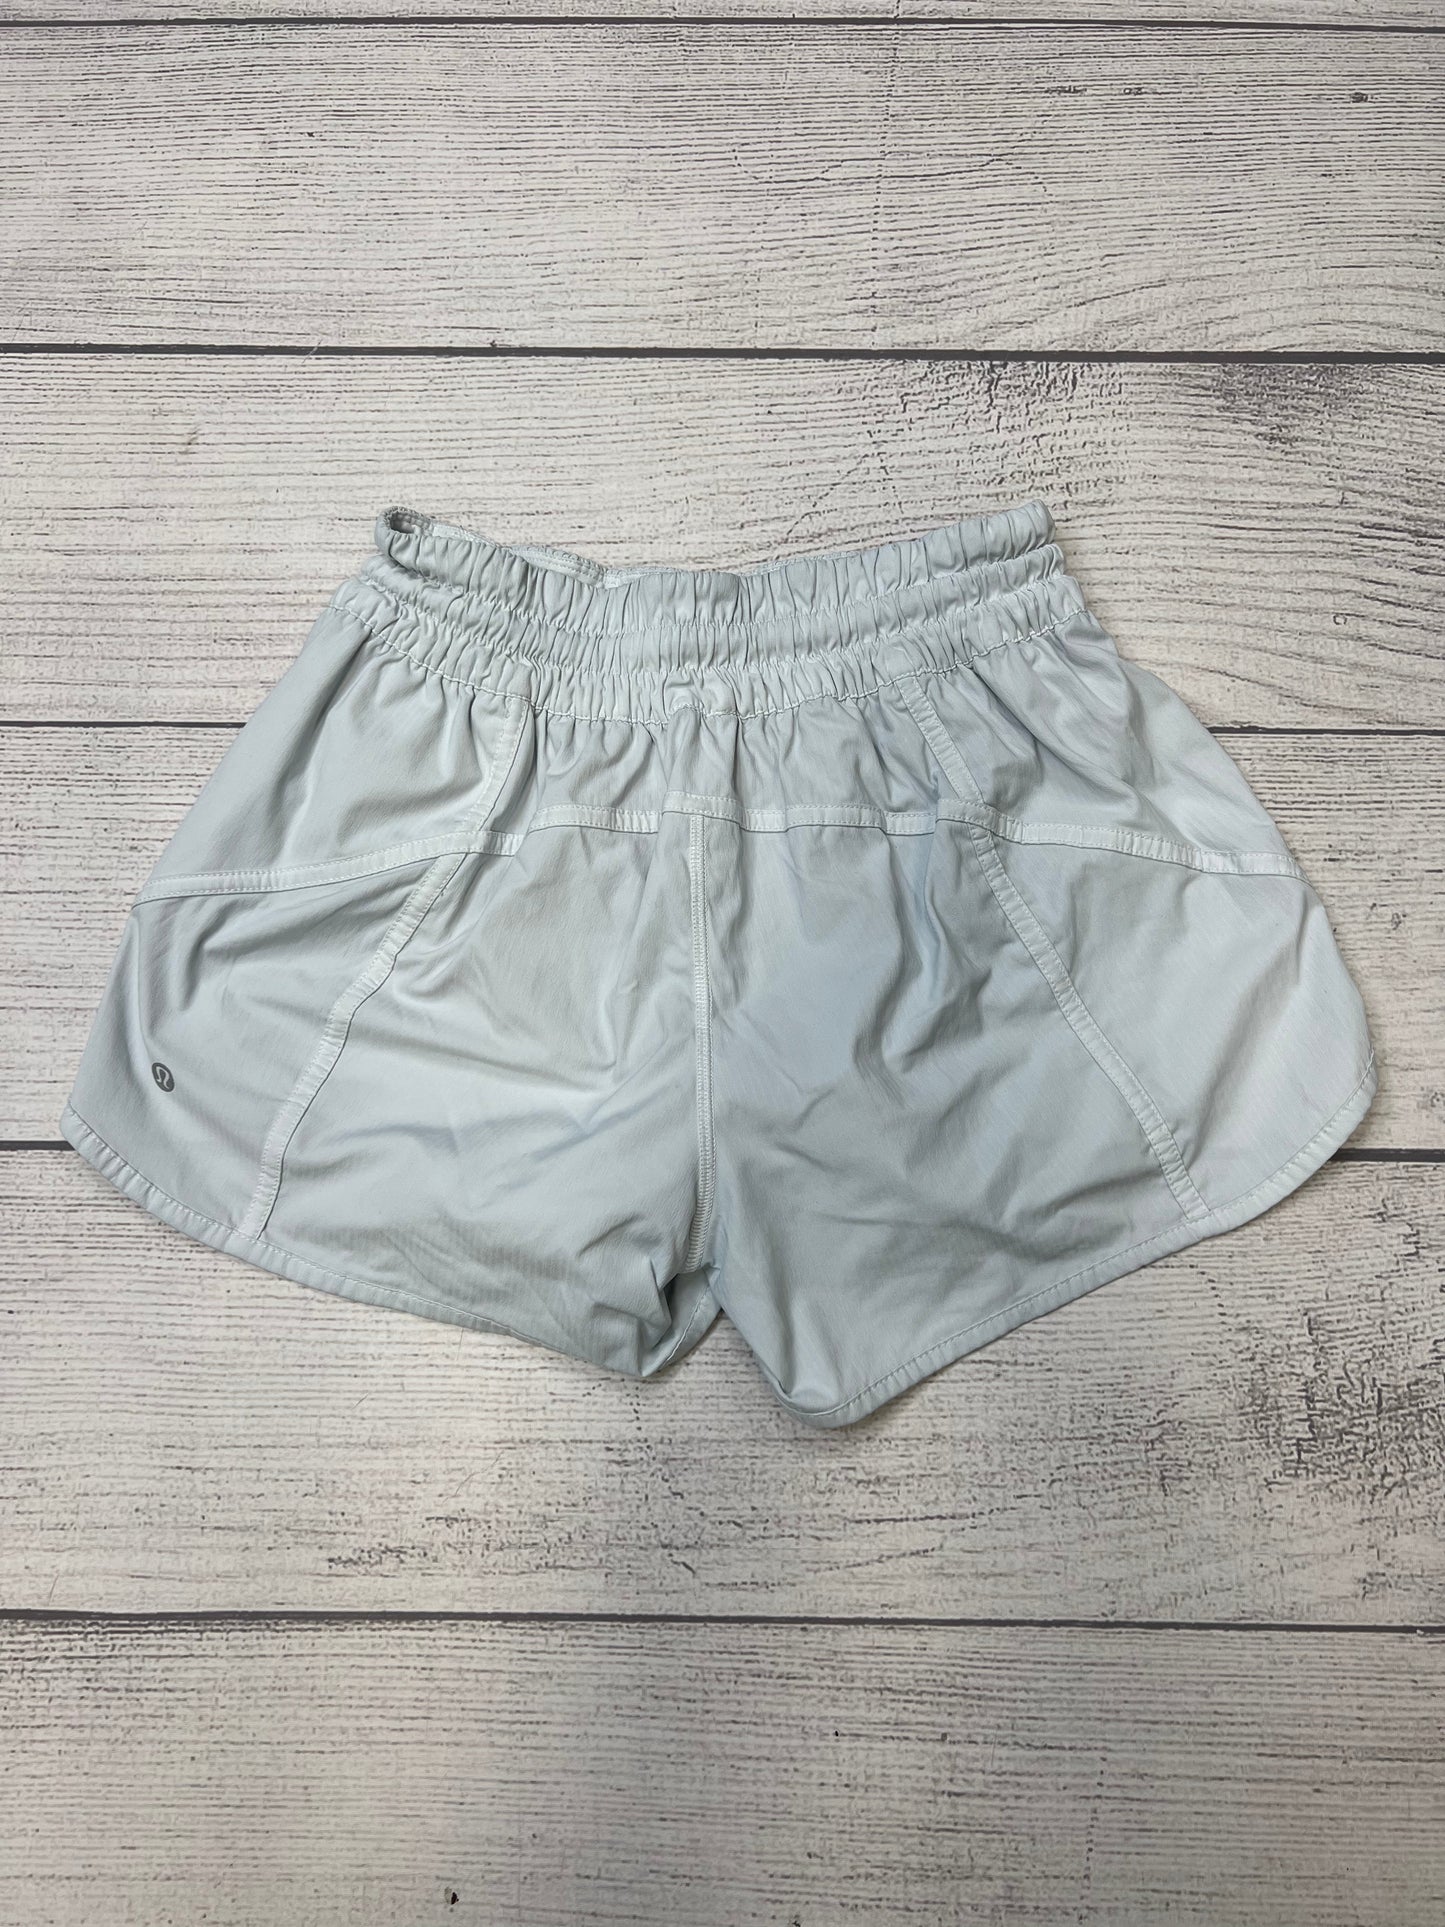 White Athletic Shorts Lululemon, Size 8